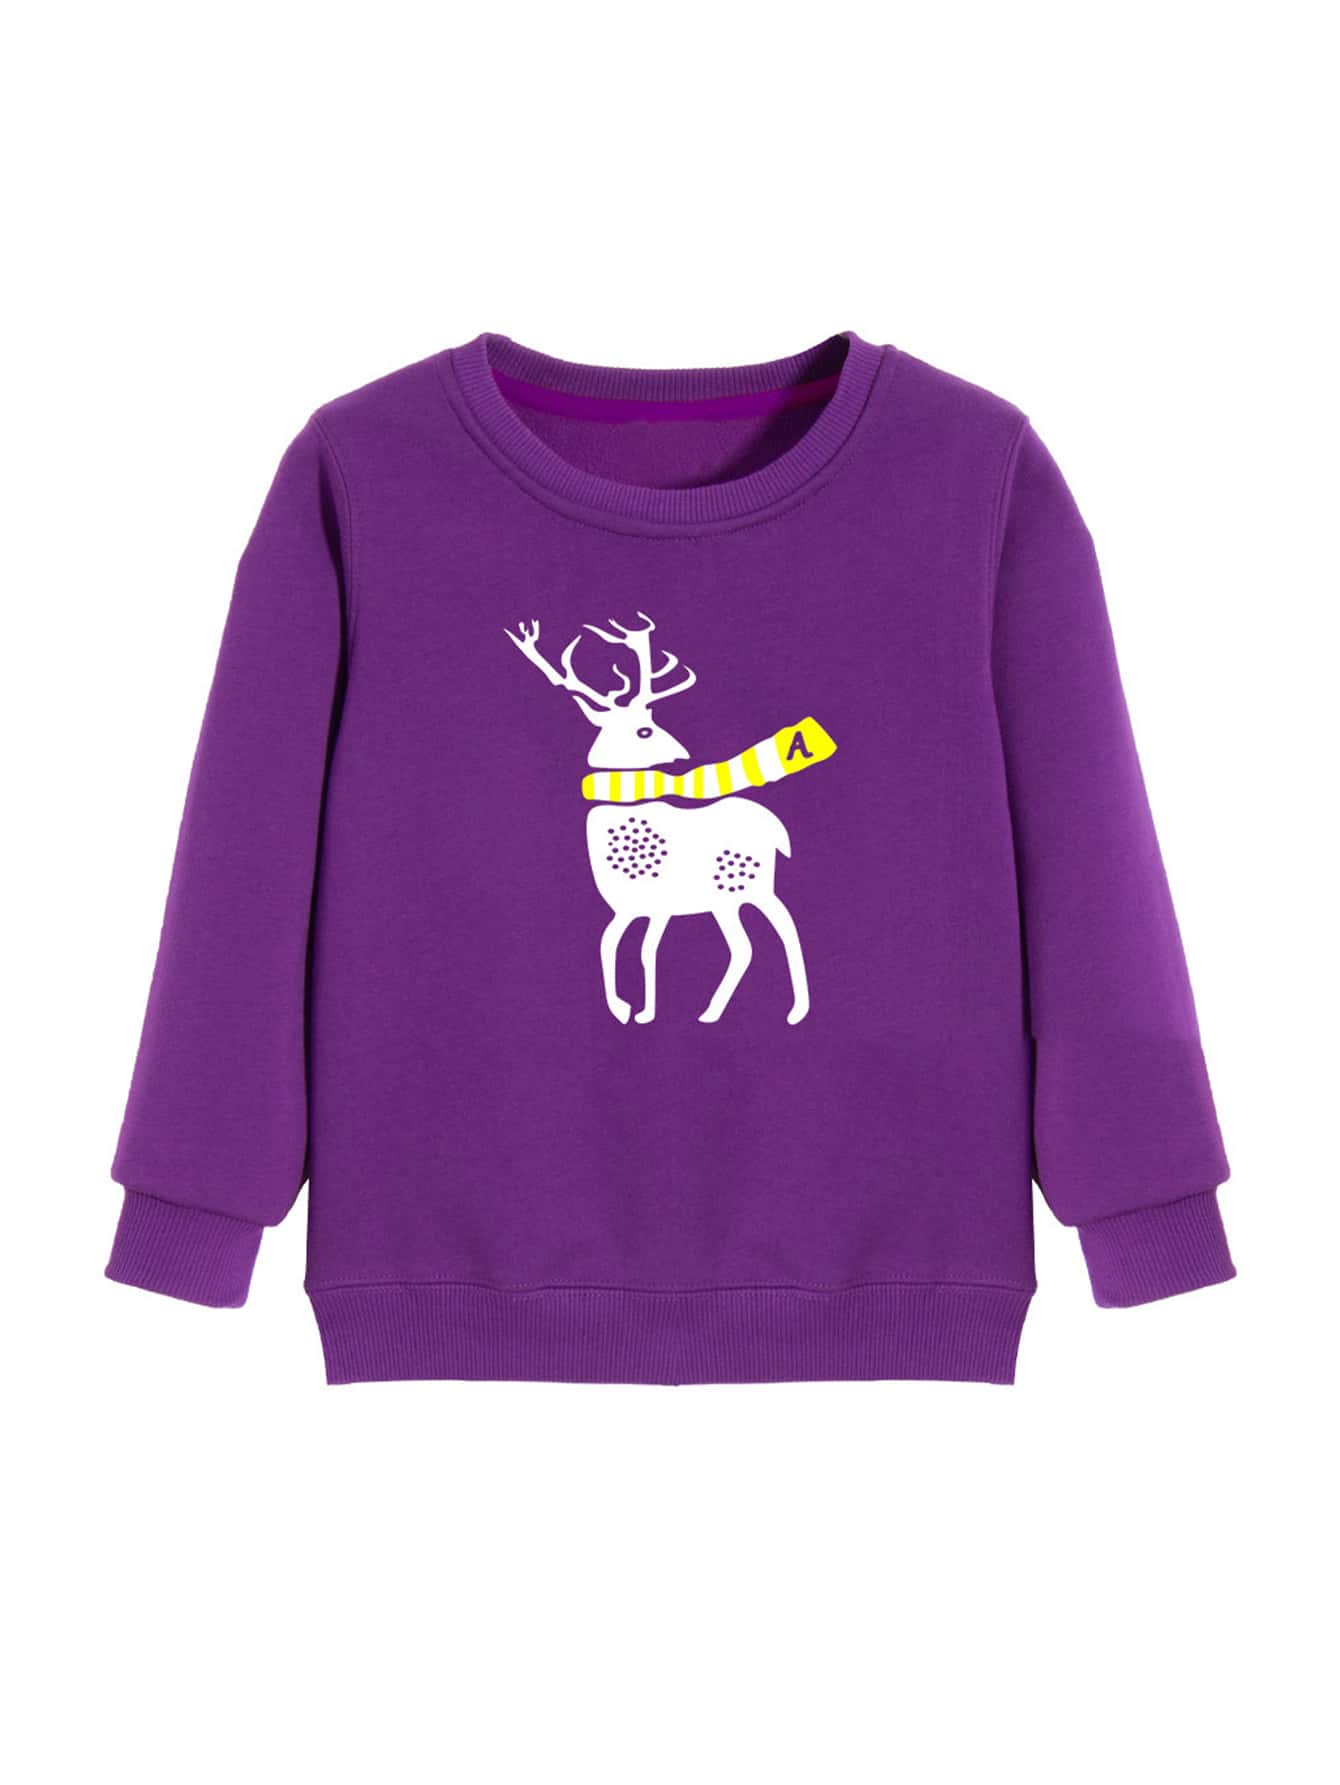 Boys Deer Print Thermal Lined Sweatshirt